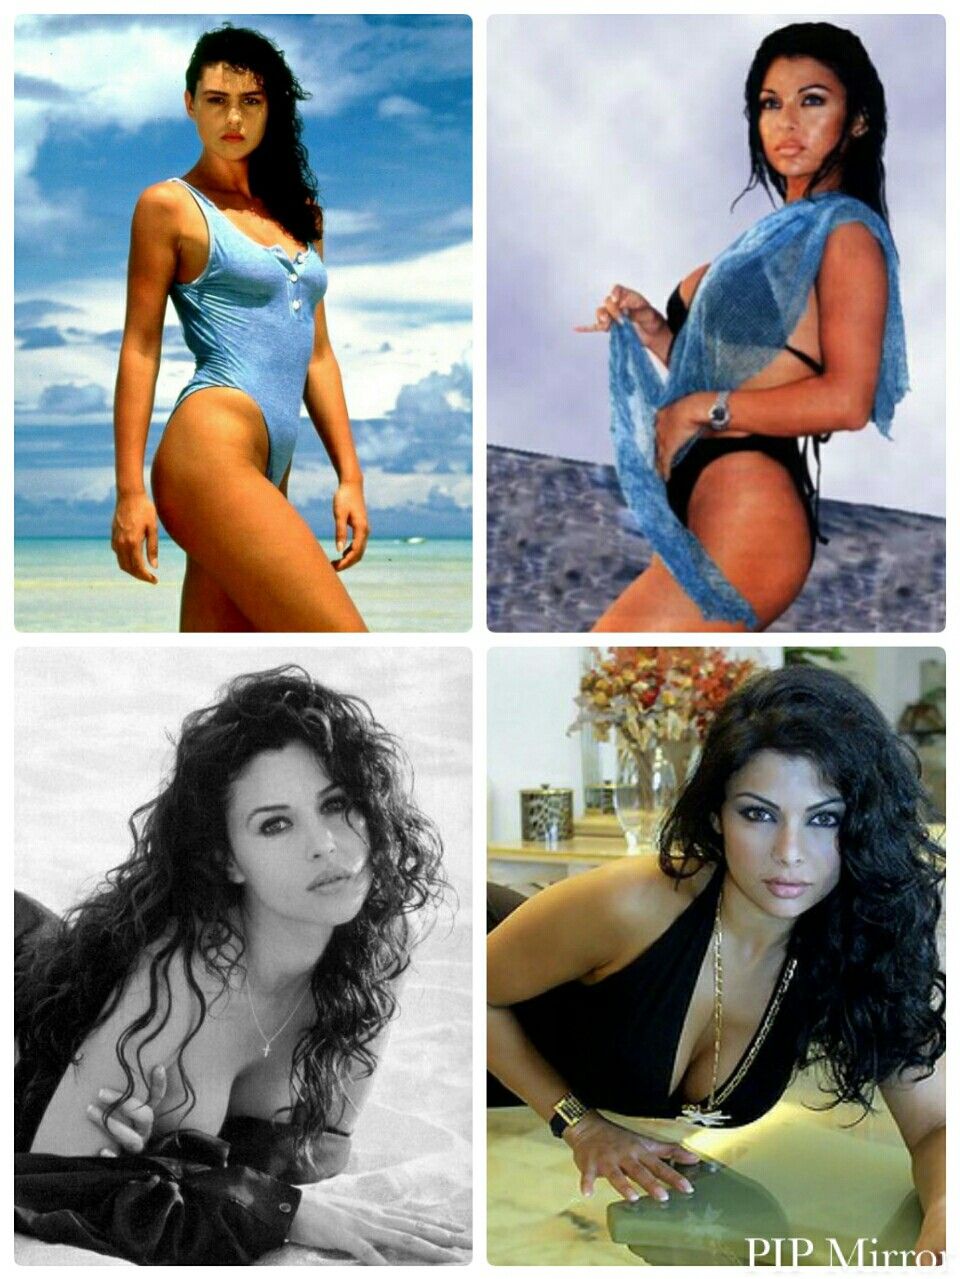 haifa wehbe bikini